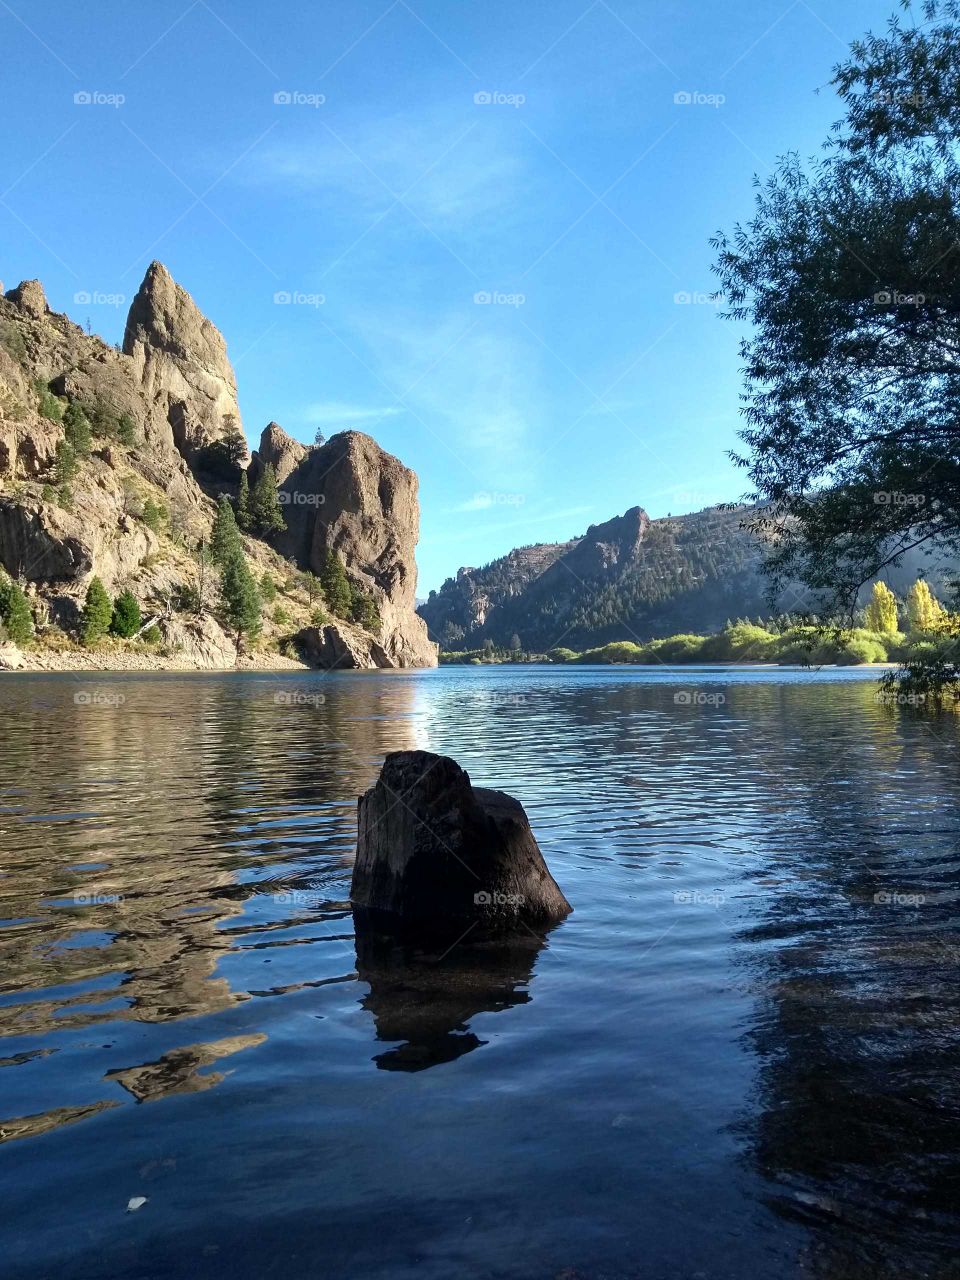 Piedra en un lago cristalino con montañas detrás en un hermoso día de verano